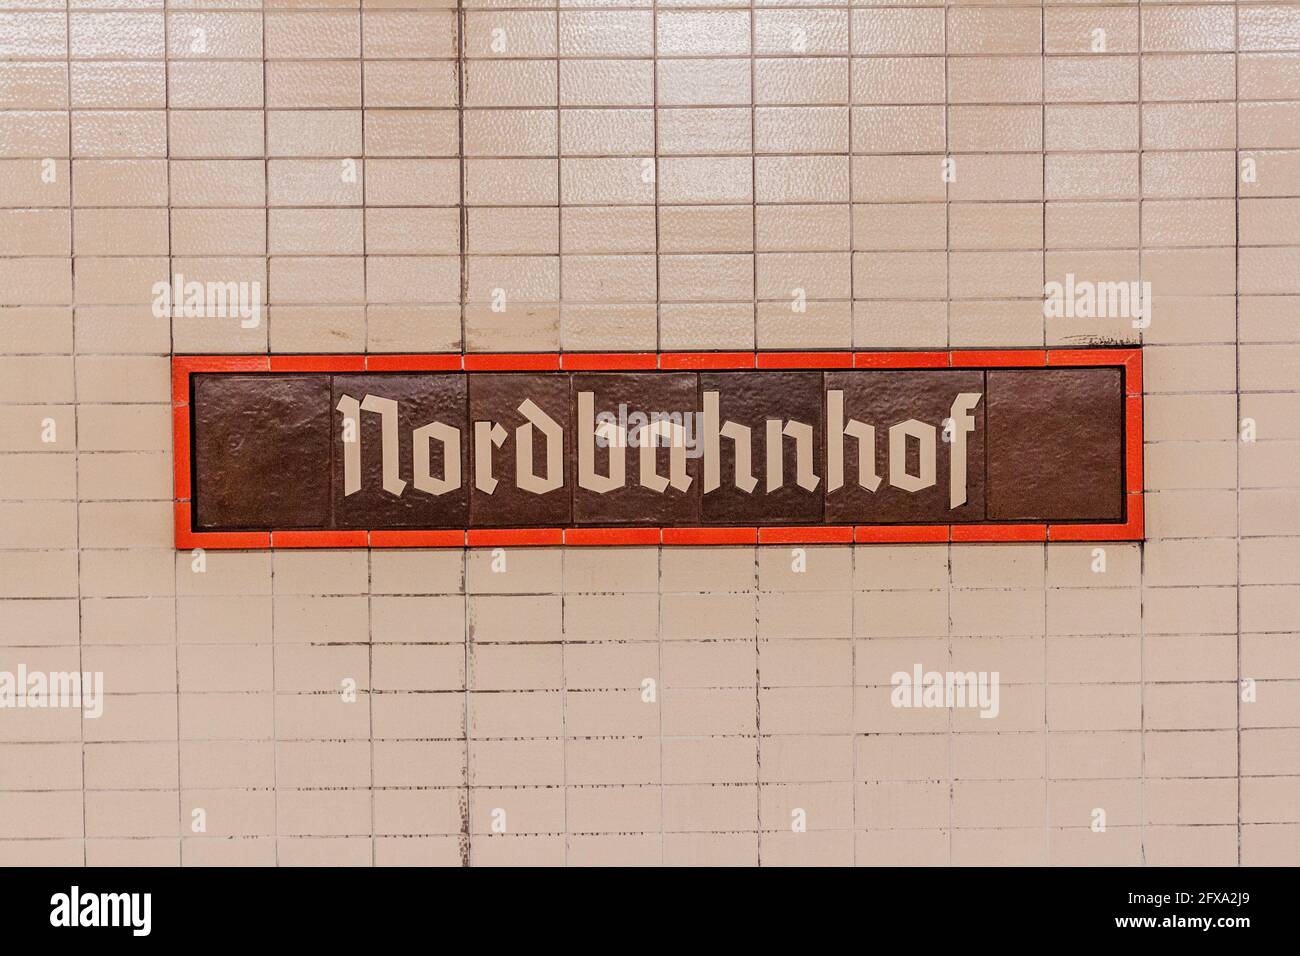 Indicazioni per la stazione ferroviaria Nordbahnhof di Berlino, Germania Foto Stock